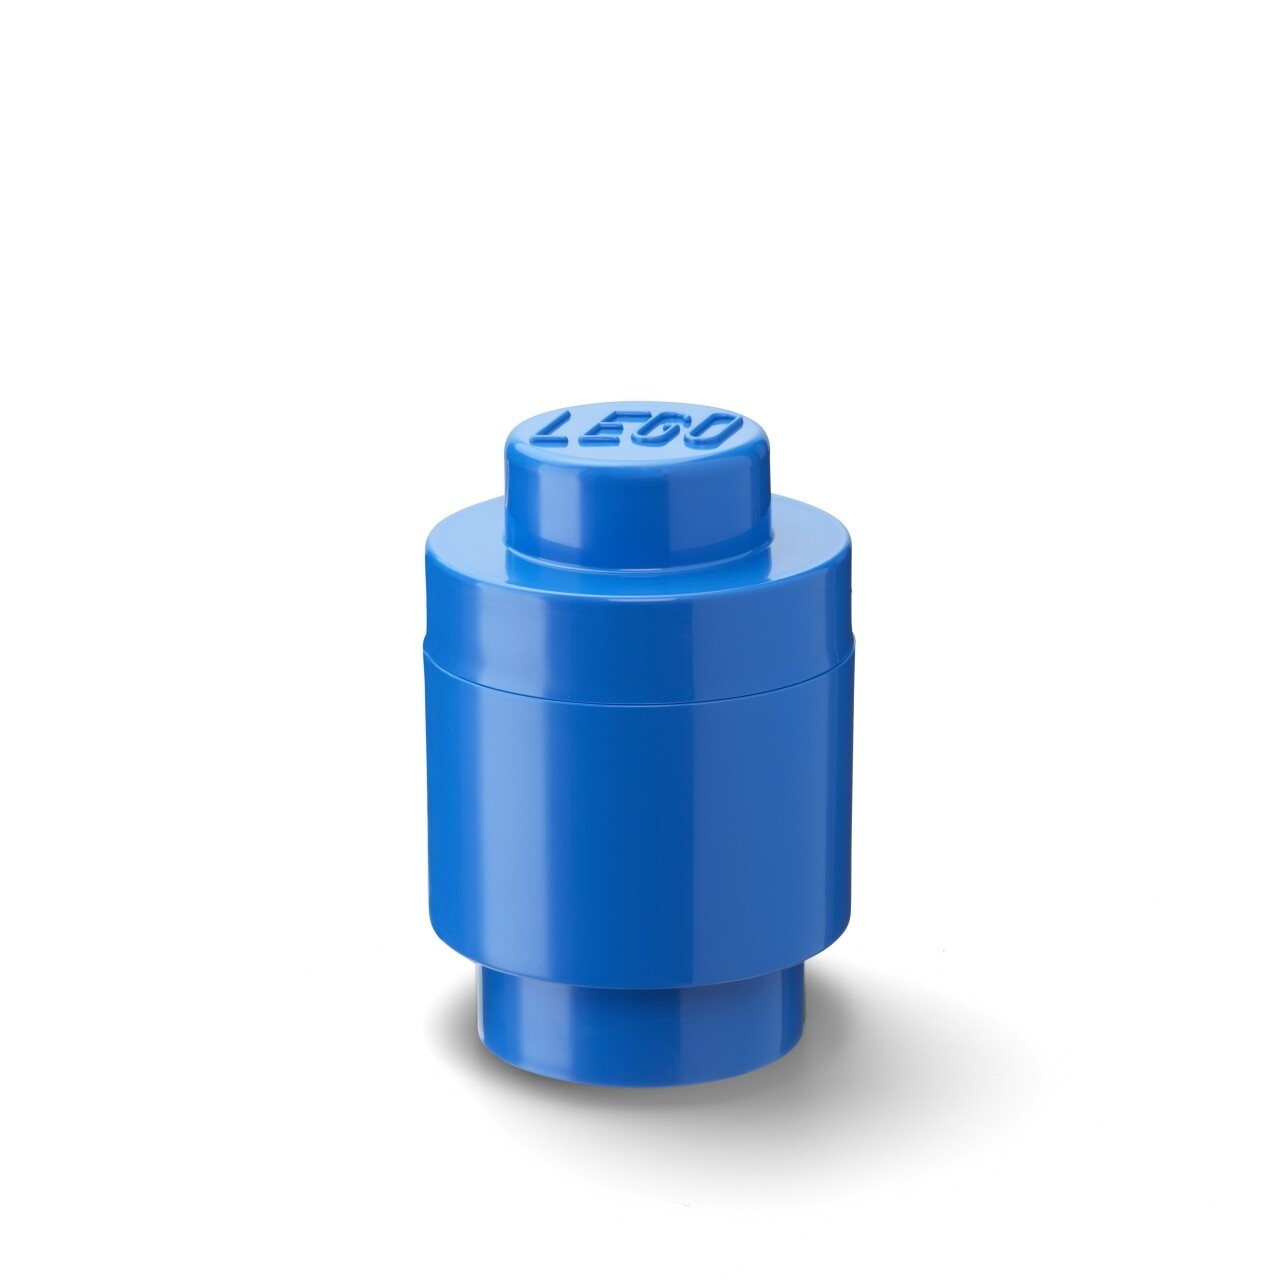 Kék henger alakú tárolódoboz - LEGO®